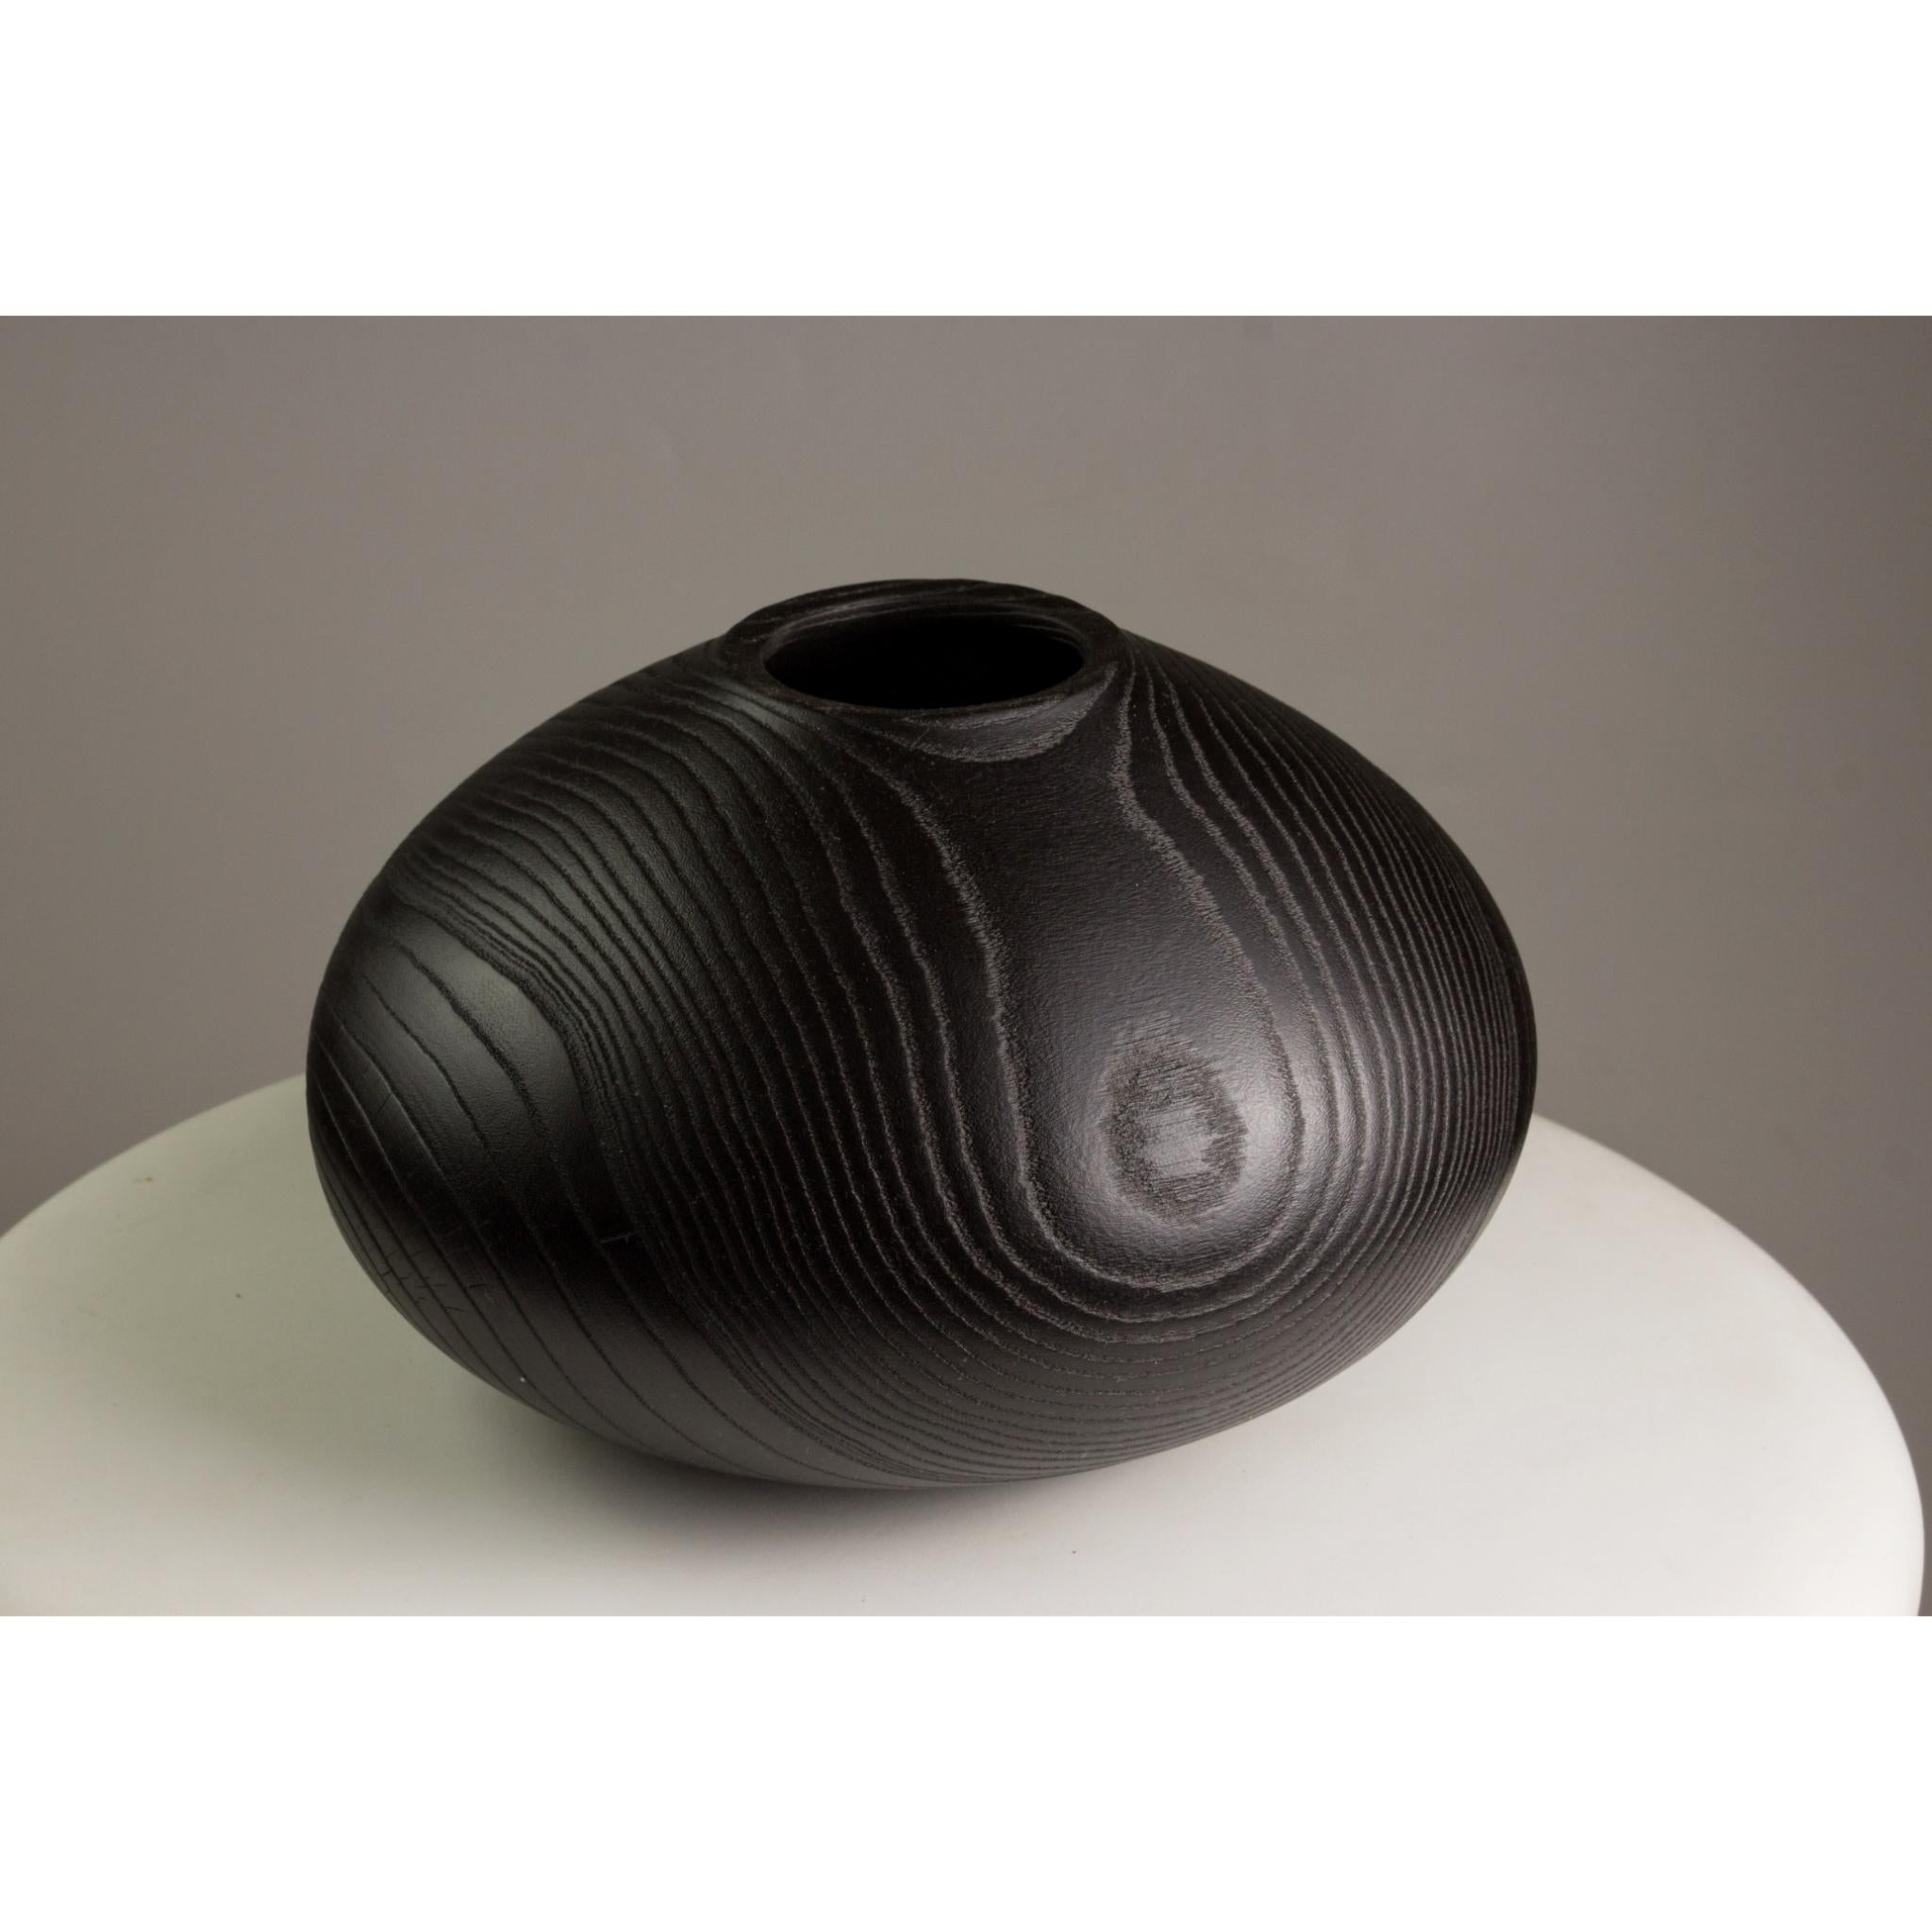 Post-Modern Ash Vase by Vlad Droz